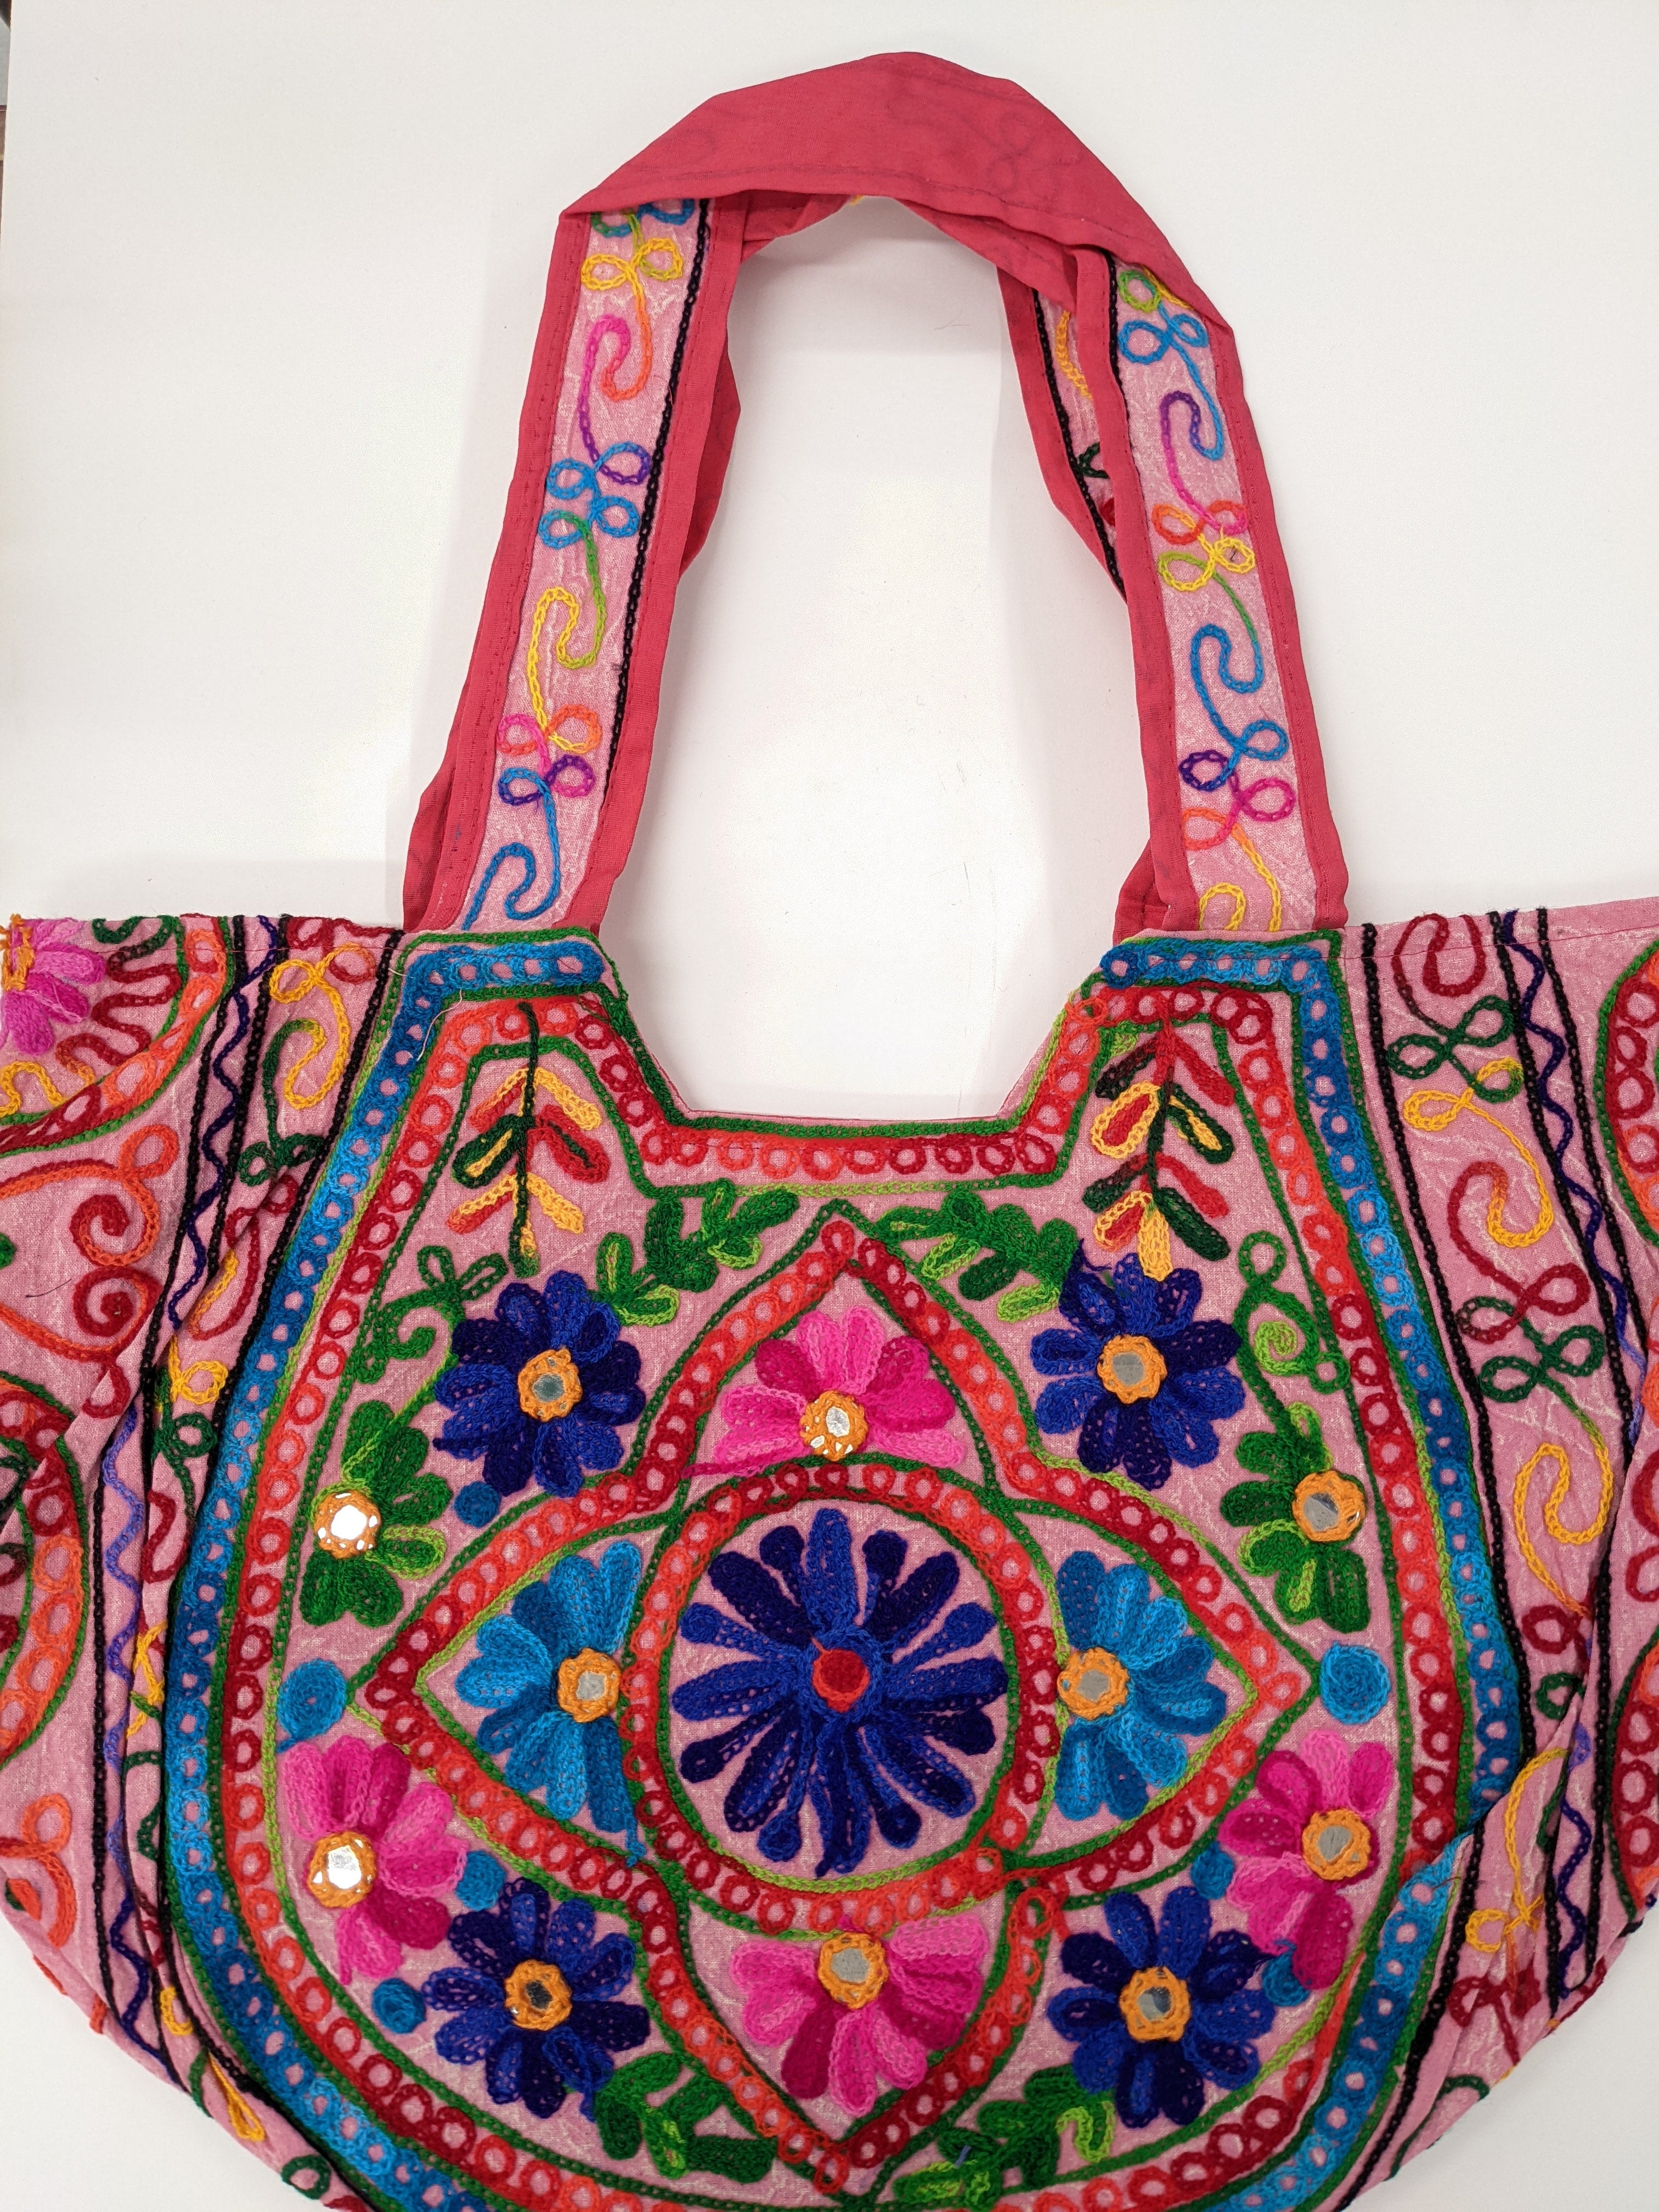 Exclusive vintage banjara Gujarati bags/clutches purse| Alibaba.com